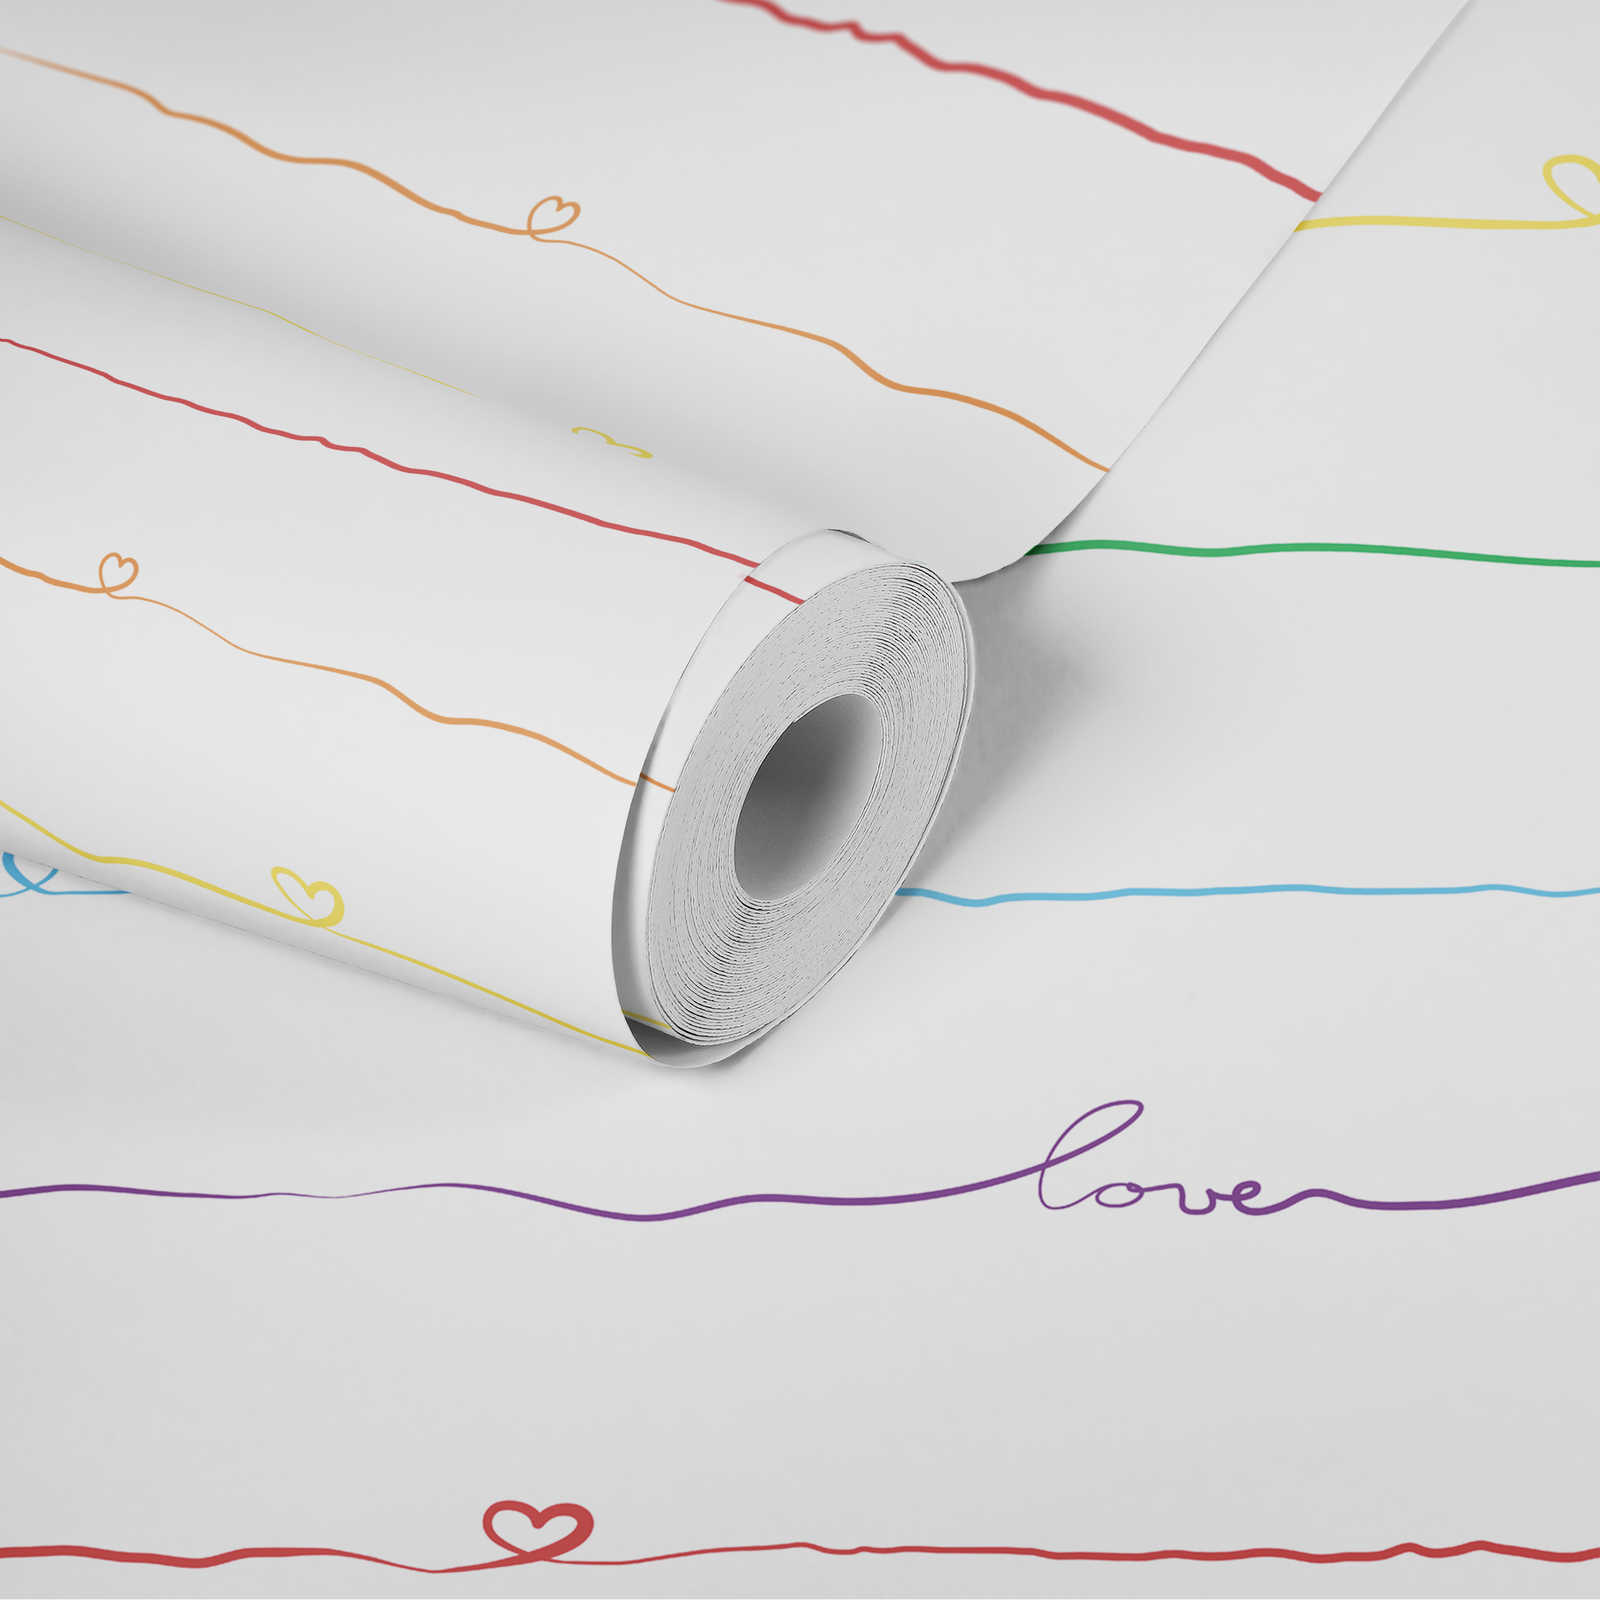             Papier peint rayé pour chambre d'enfant avec coeur - multicolore, blanc, rouge
        